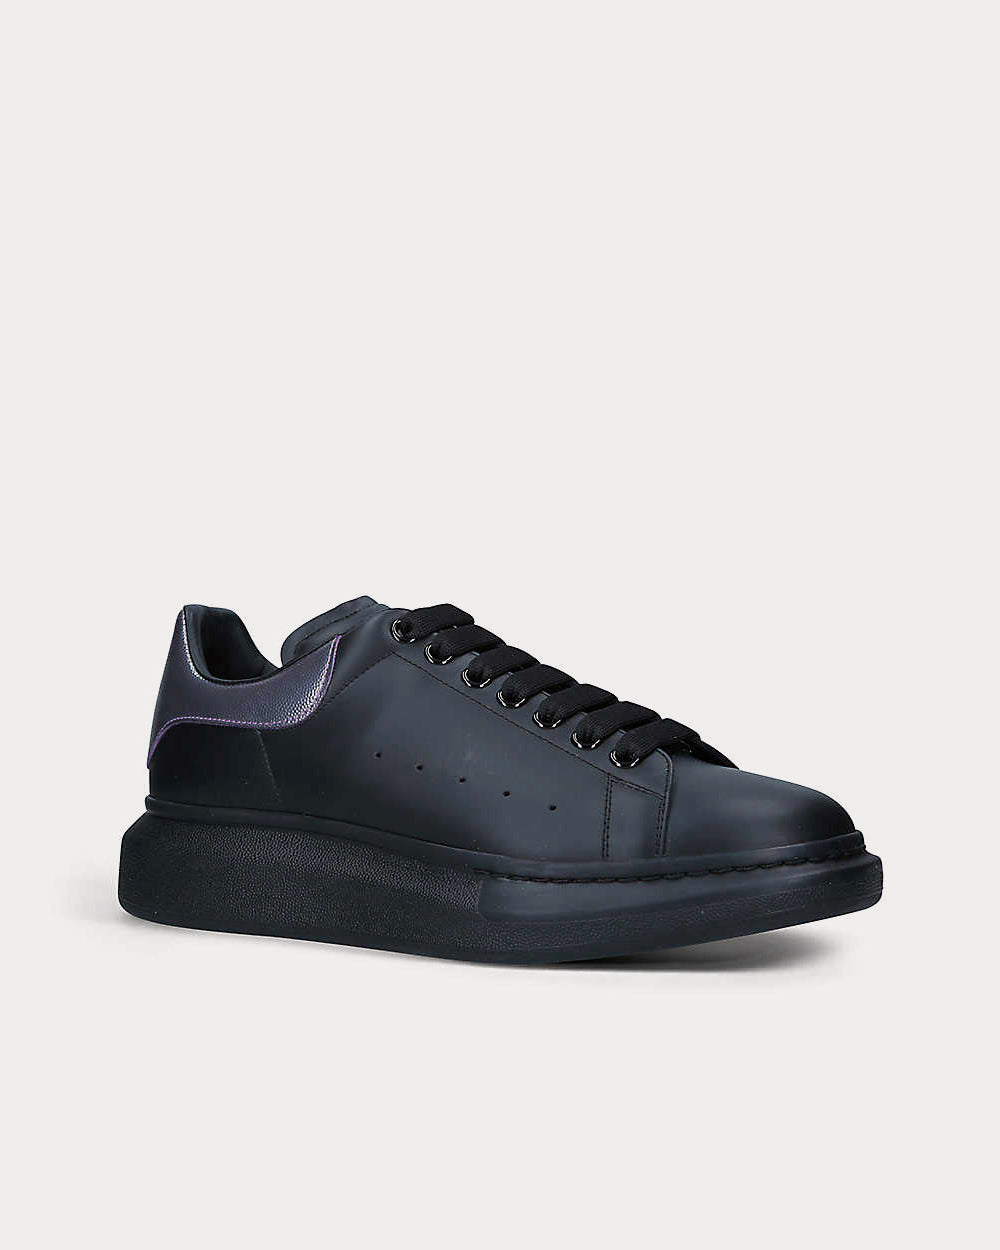 Alexander McQueen - Platform Contrast Panel Black / Iridescent  Low Top Sneakers